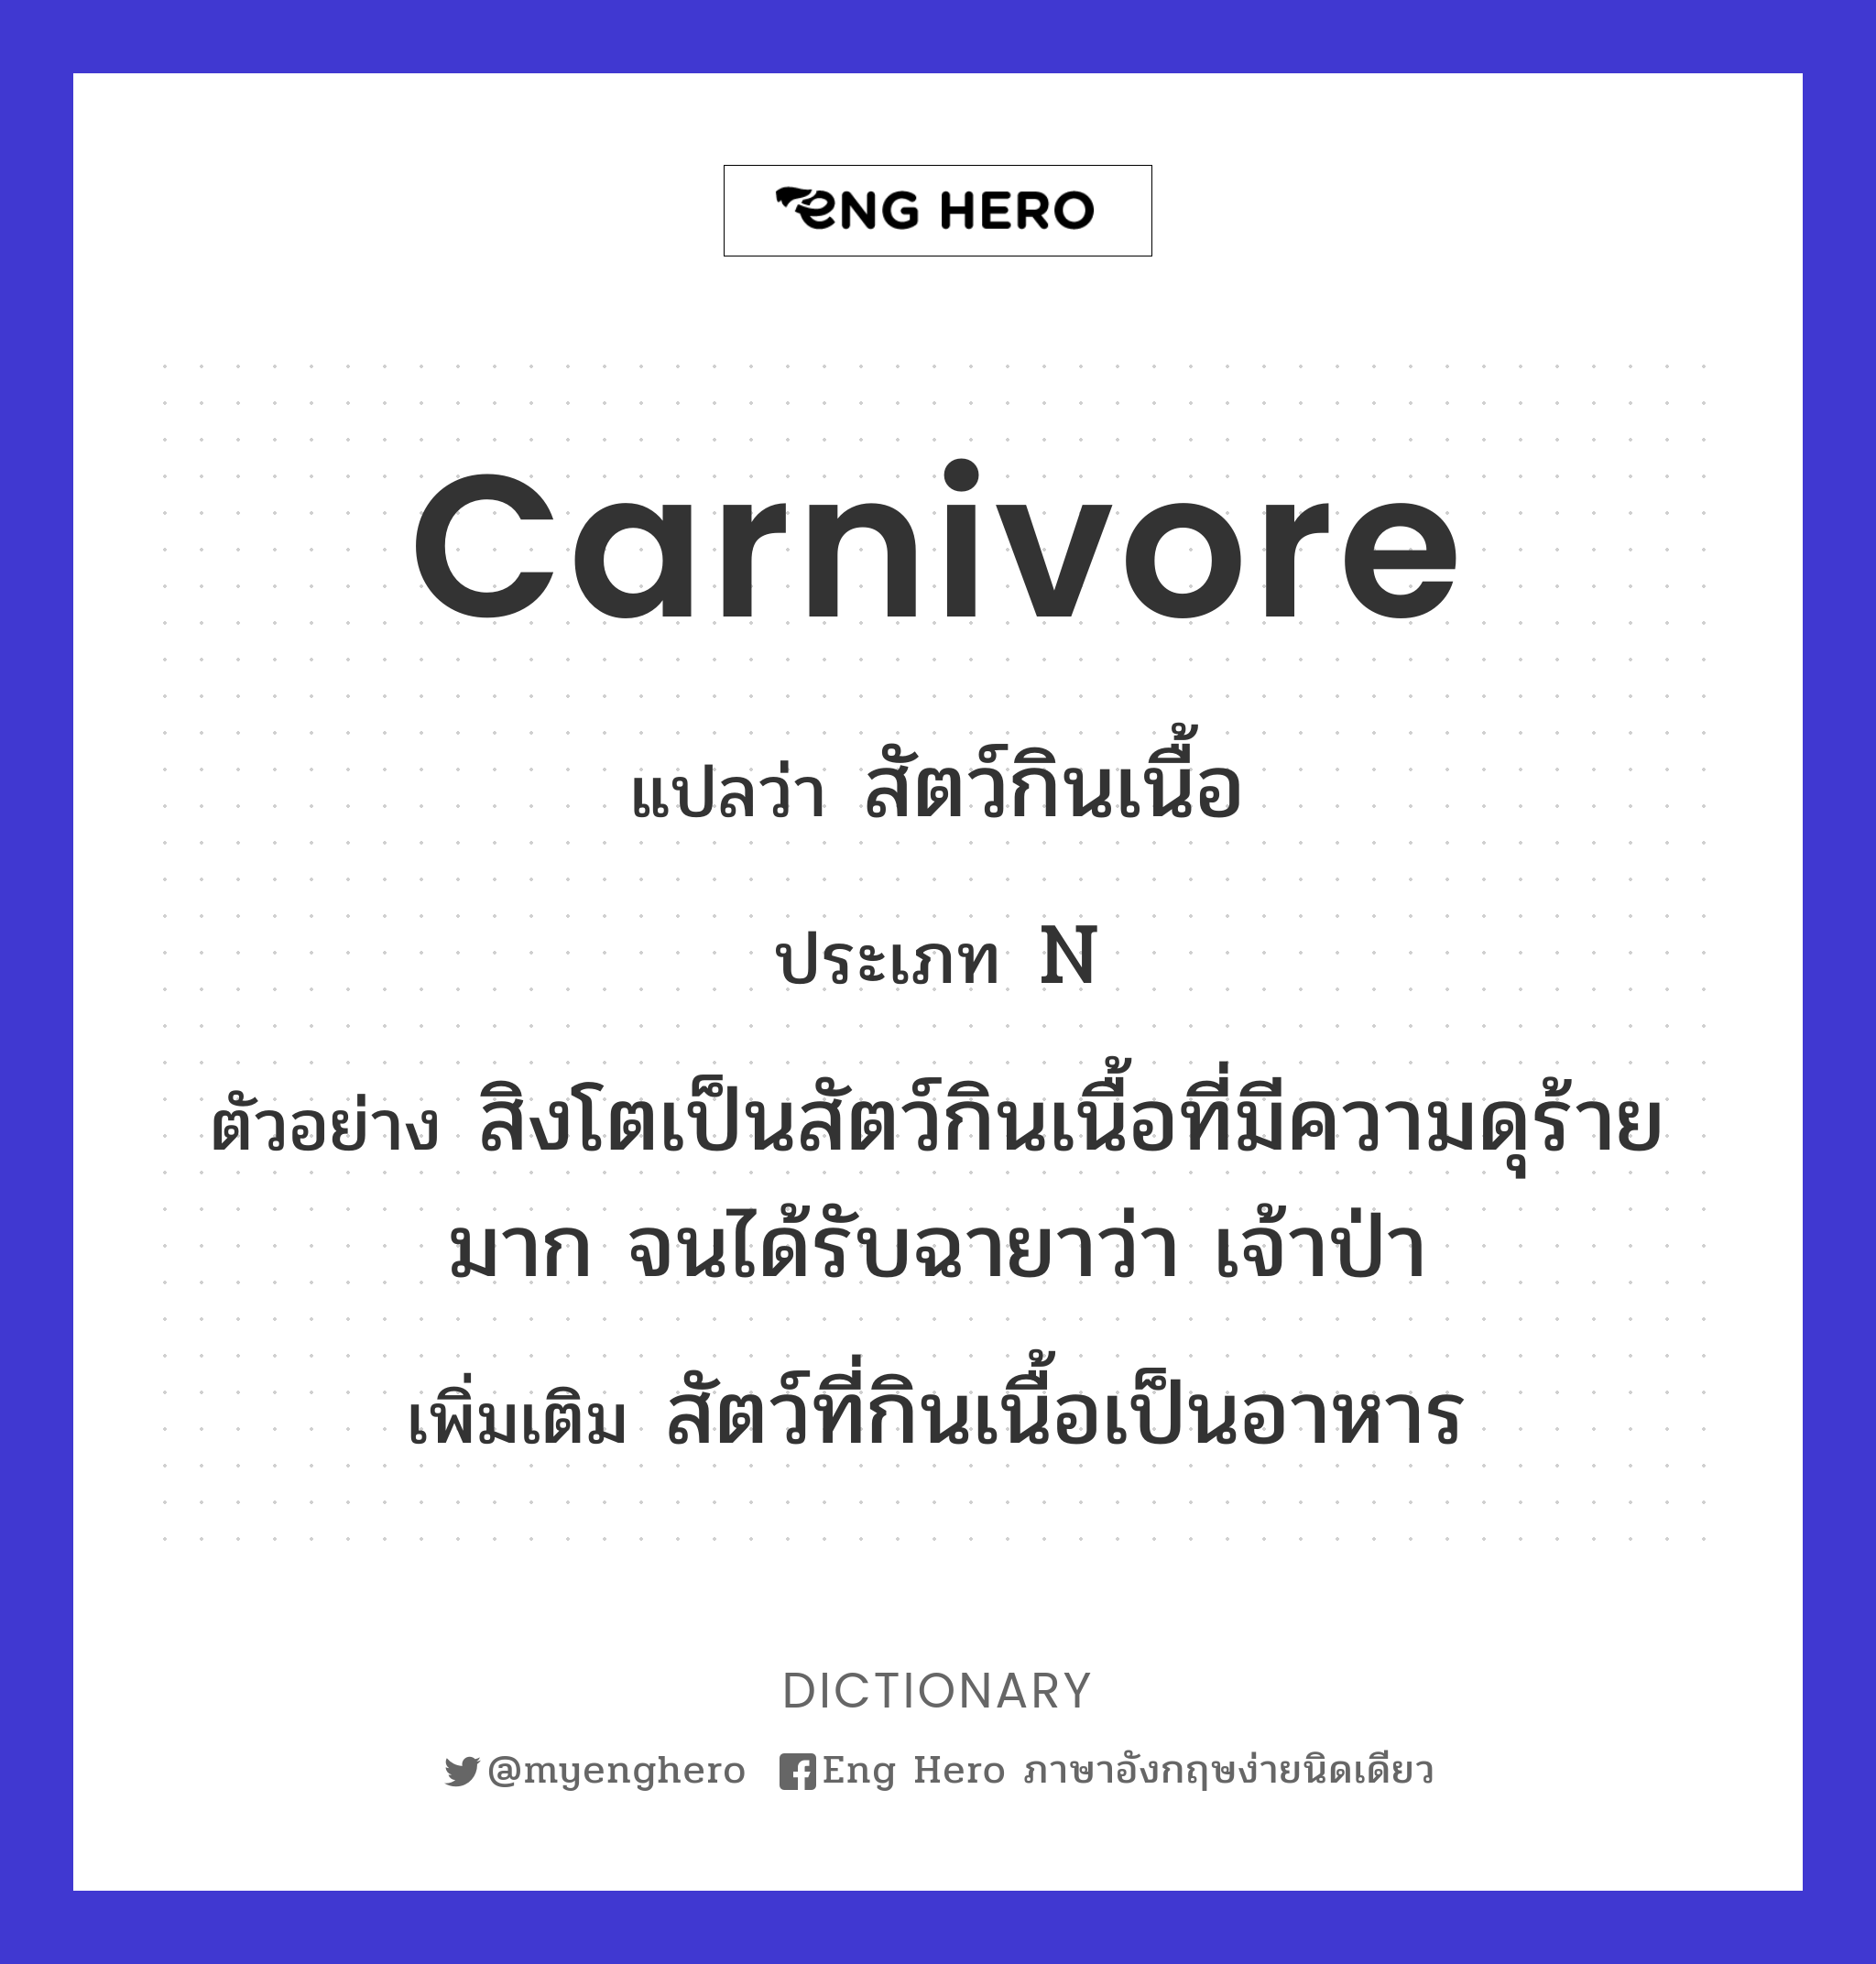 carnivore